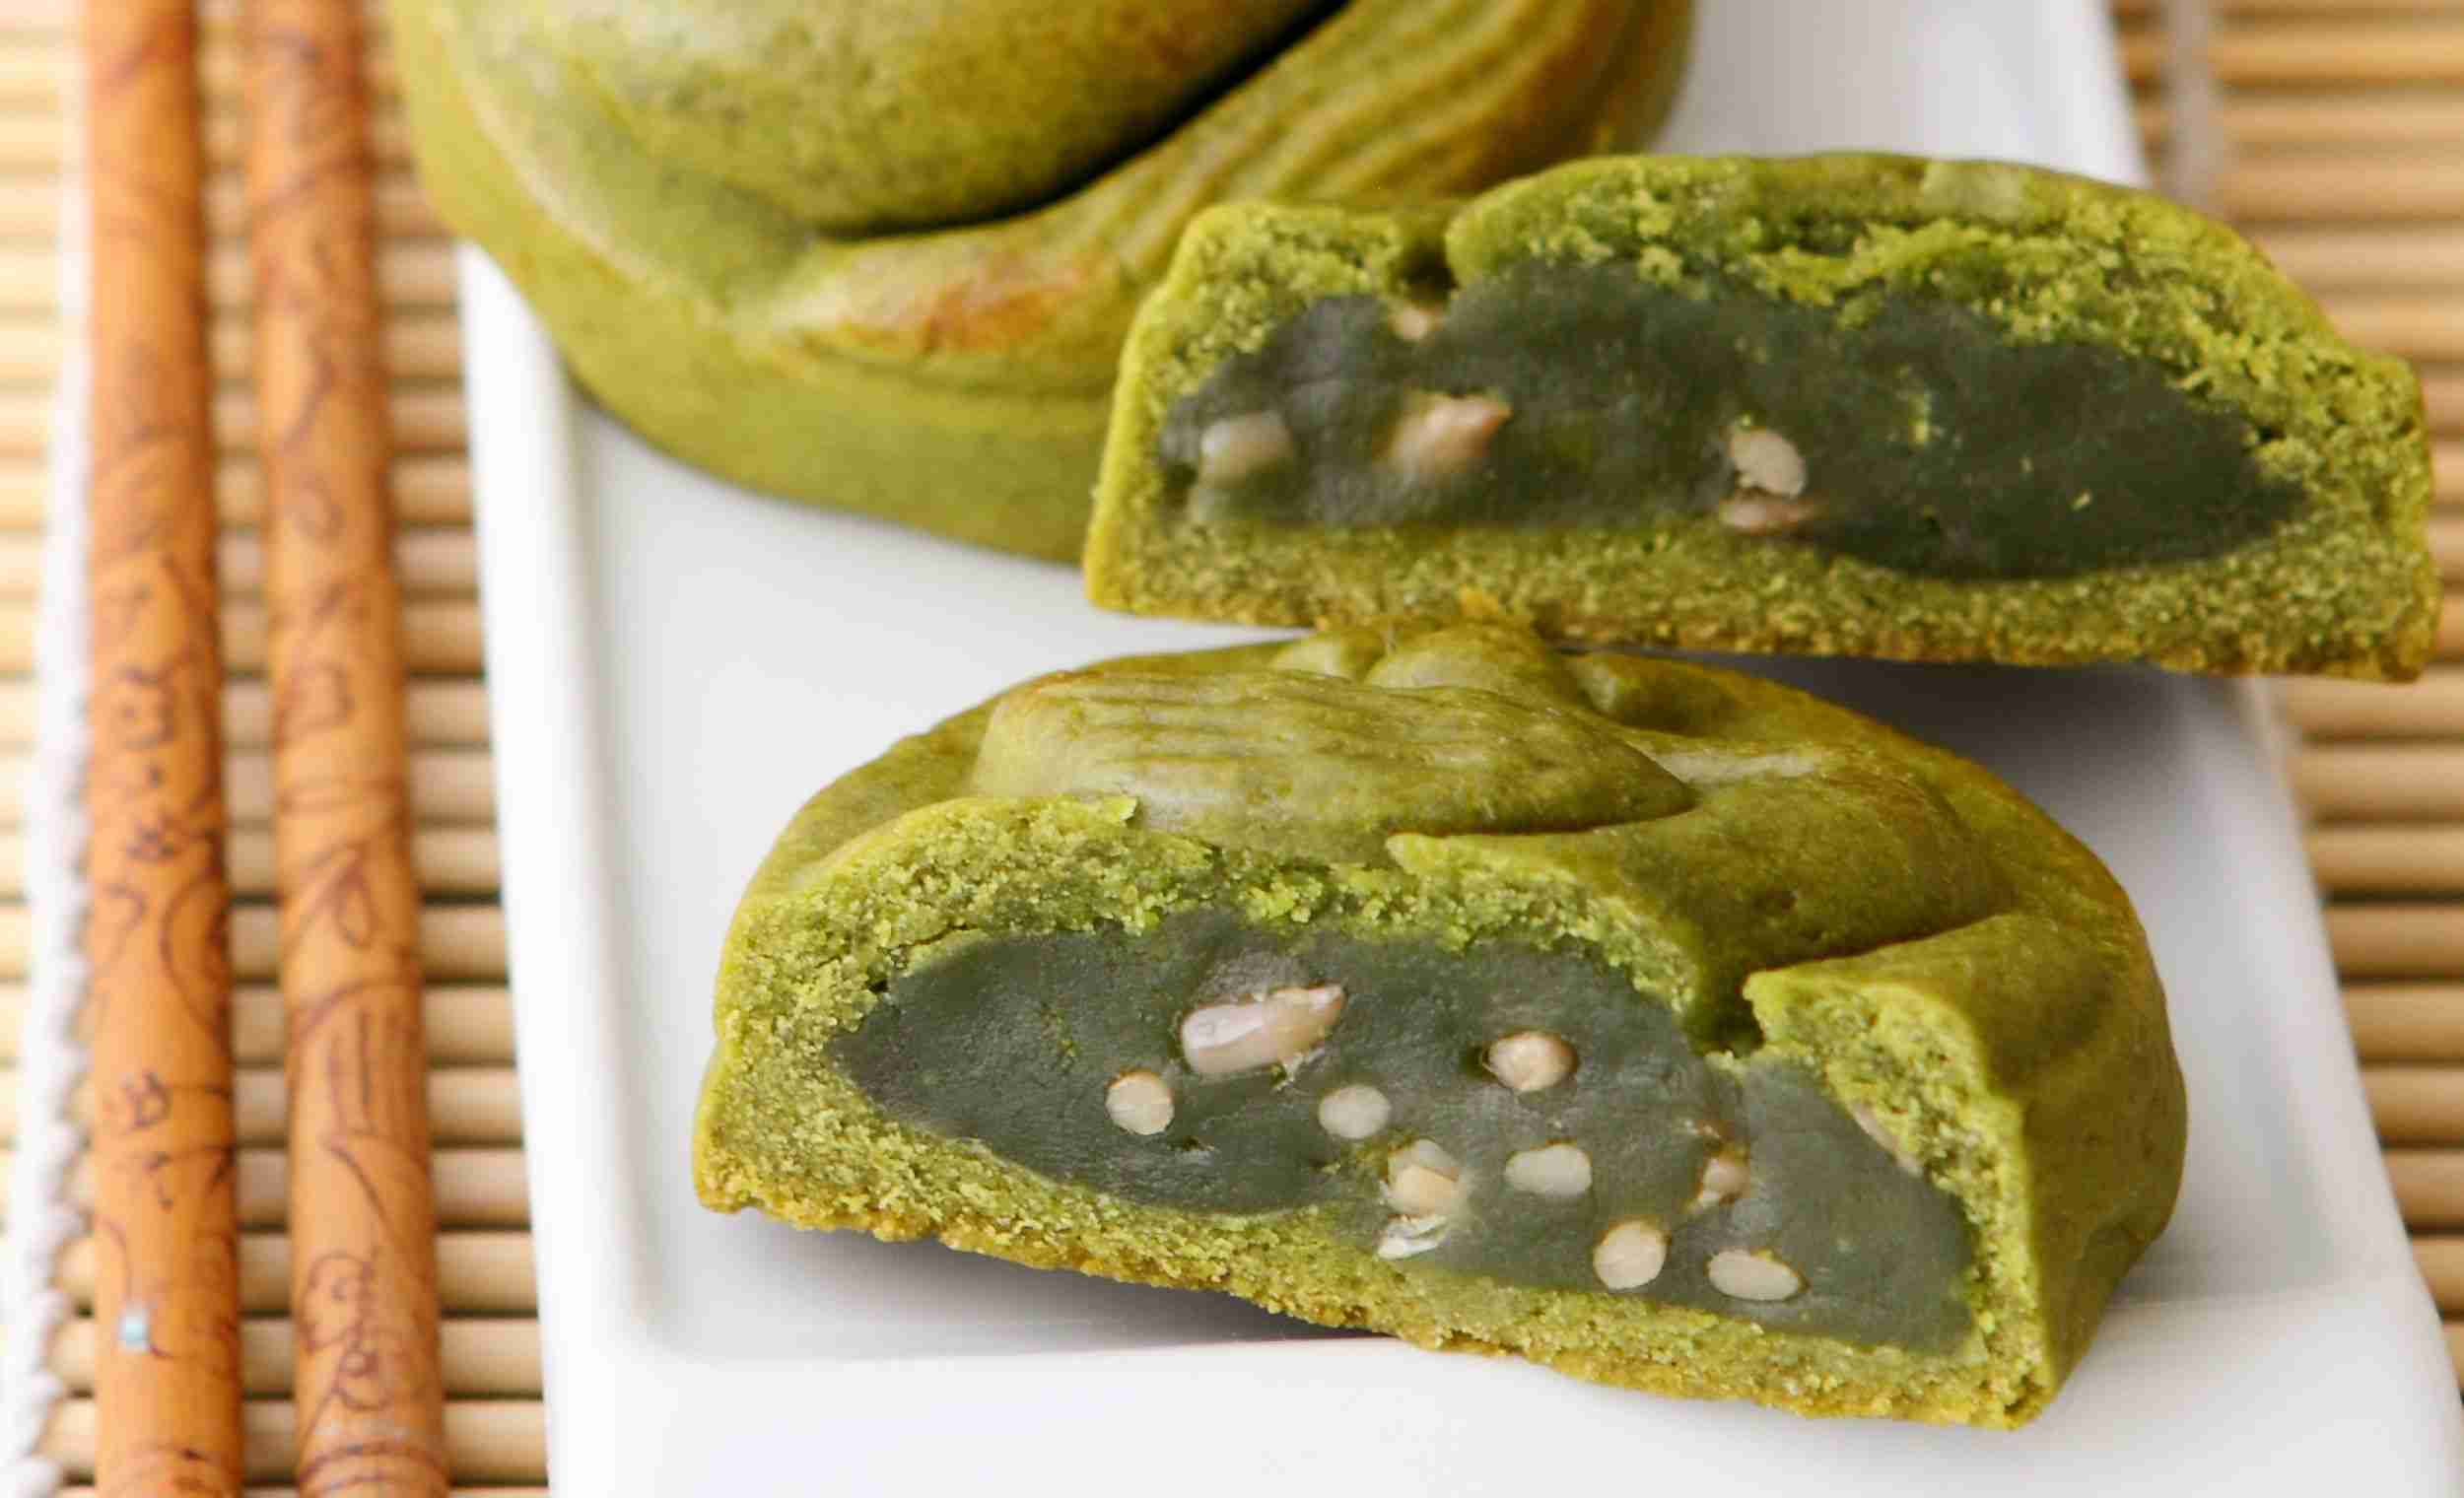 Kue bulan teh hijau juga varian yang cukup populer tetapi berbeda dari kue bulan yang dibuat secara tradisional